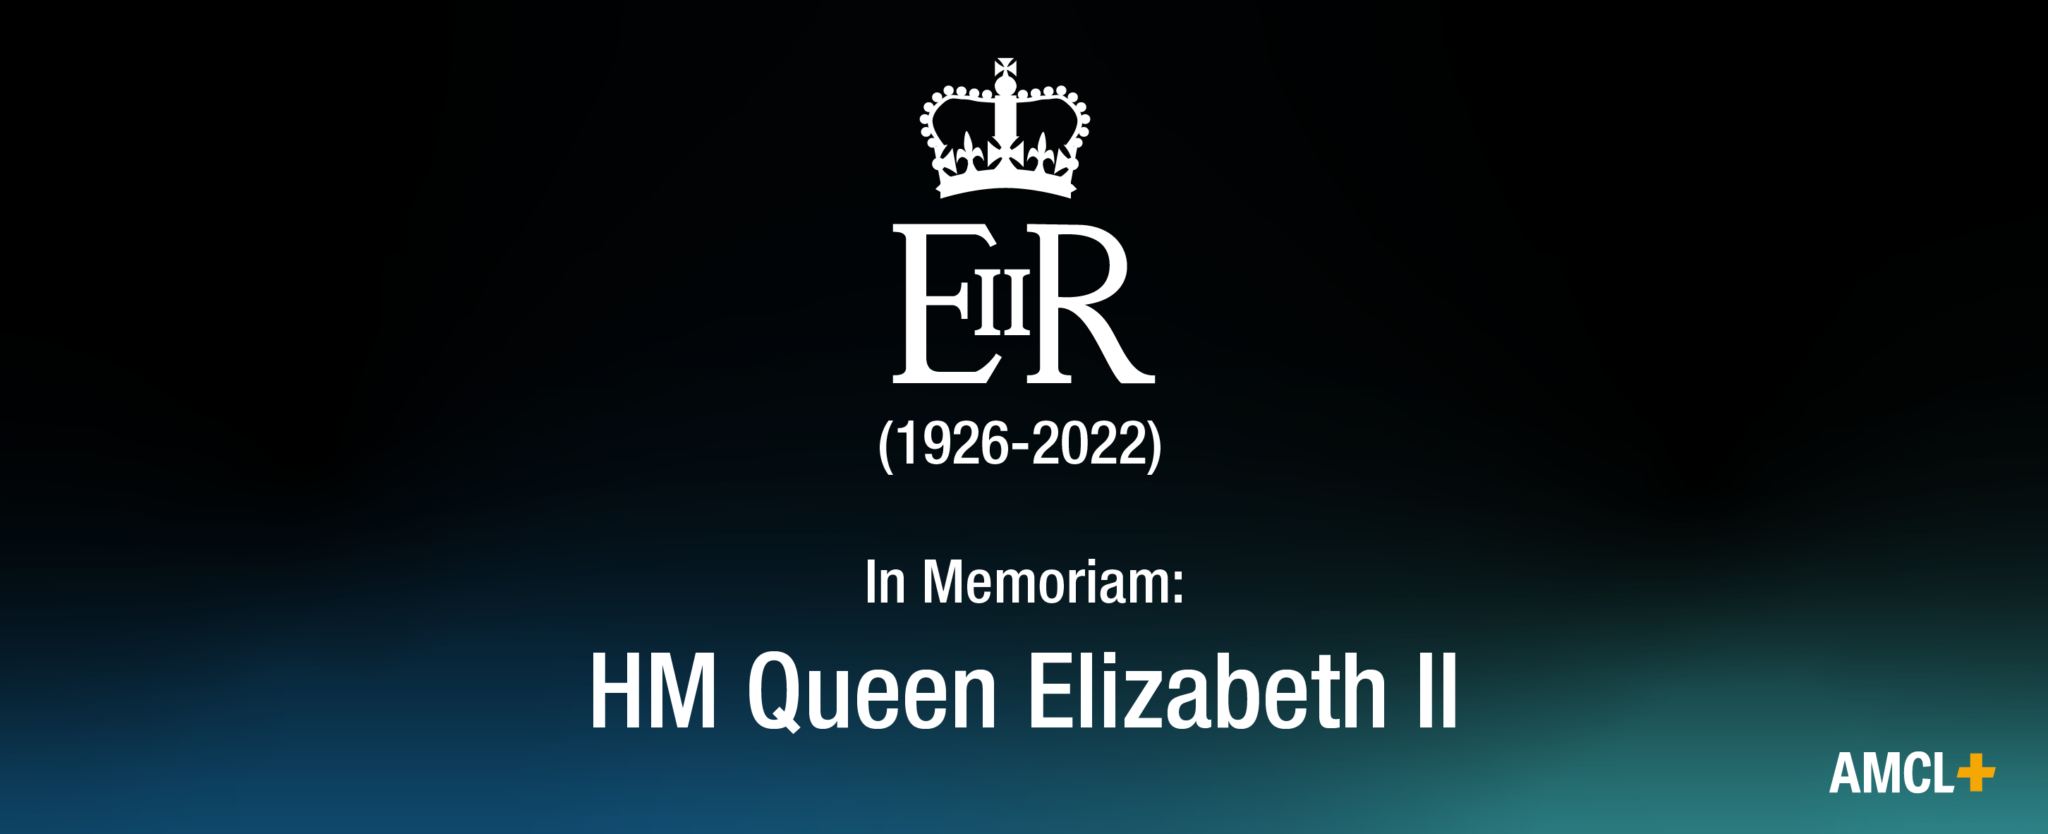 In Memoriam Hm Queen Elizabeth Ii 1926 2022 Amcl 